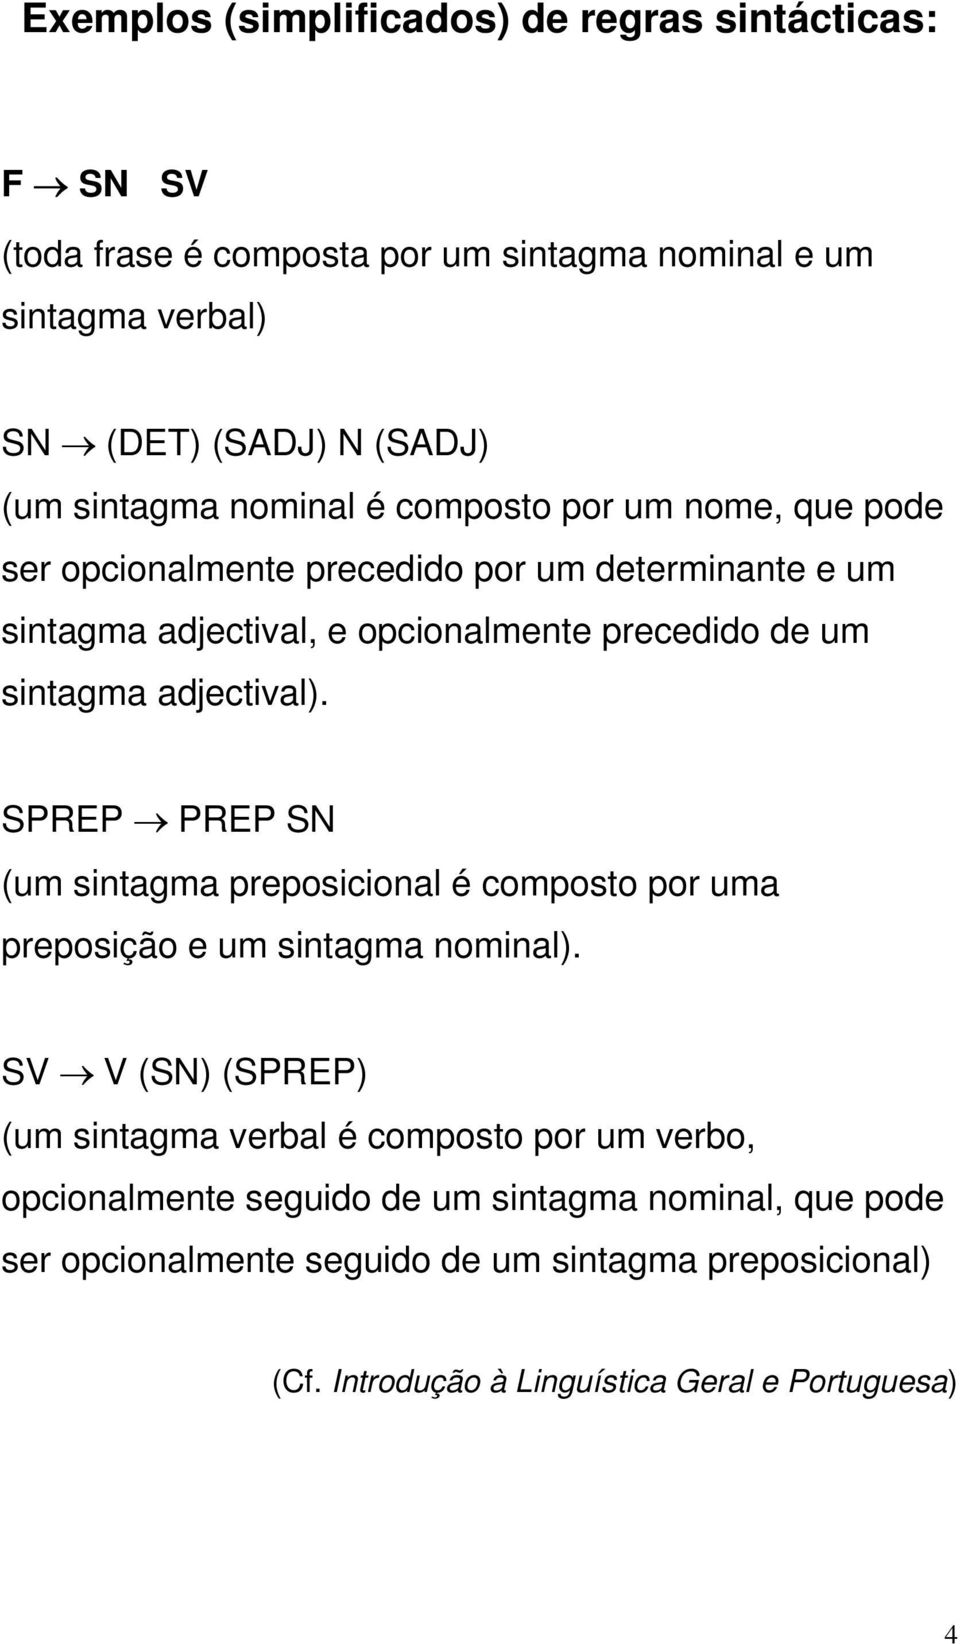 adjectival). SPREP PREP SN (um sintagma preposicional é composto por uma preposição e um sintagma nominal).